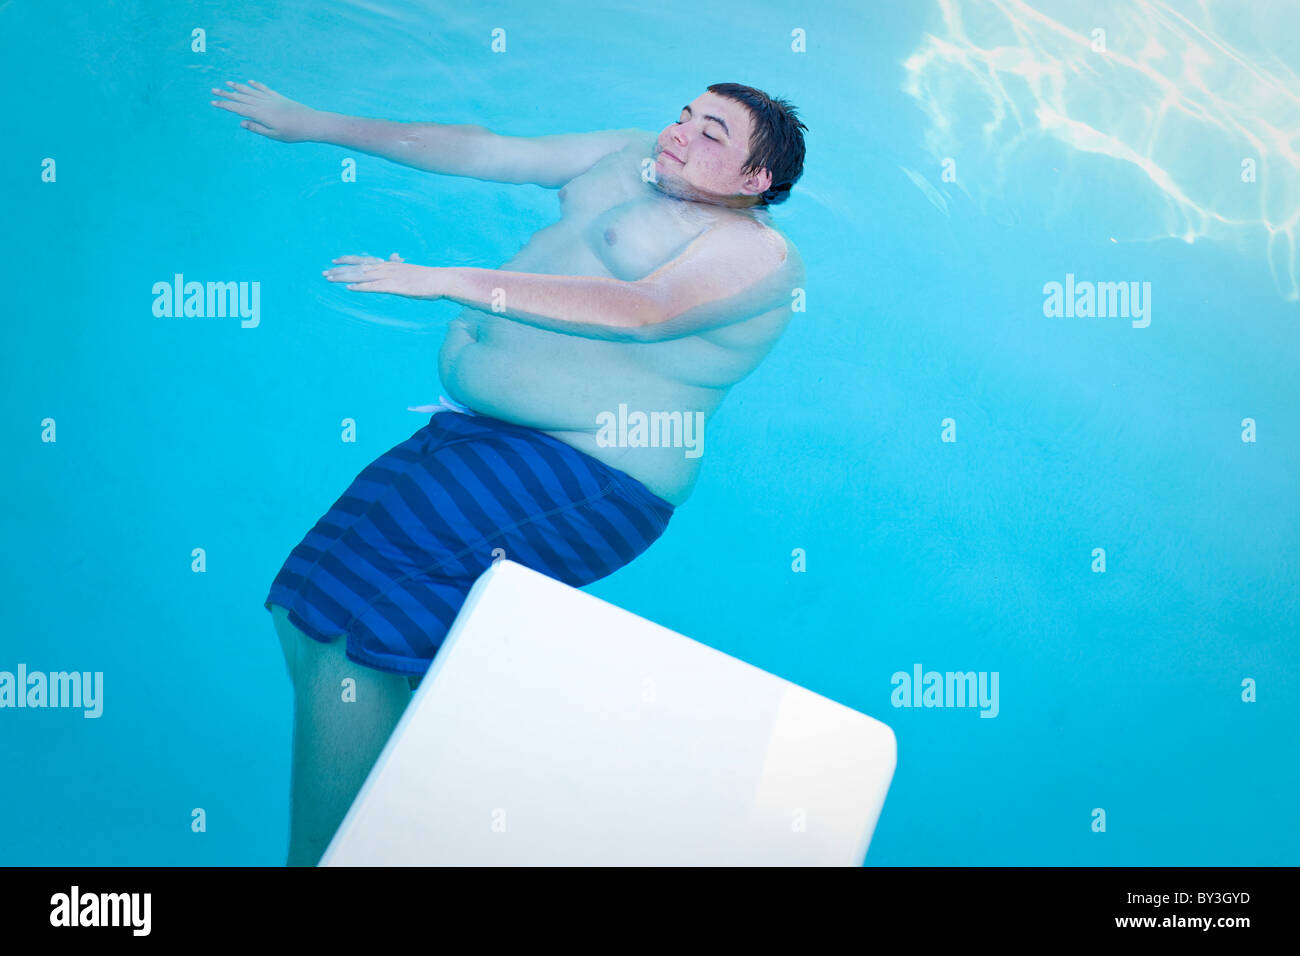 Hughson, California, United States. Un adolescent obèse flotte dans une piscine. Banque D'Images